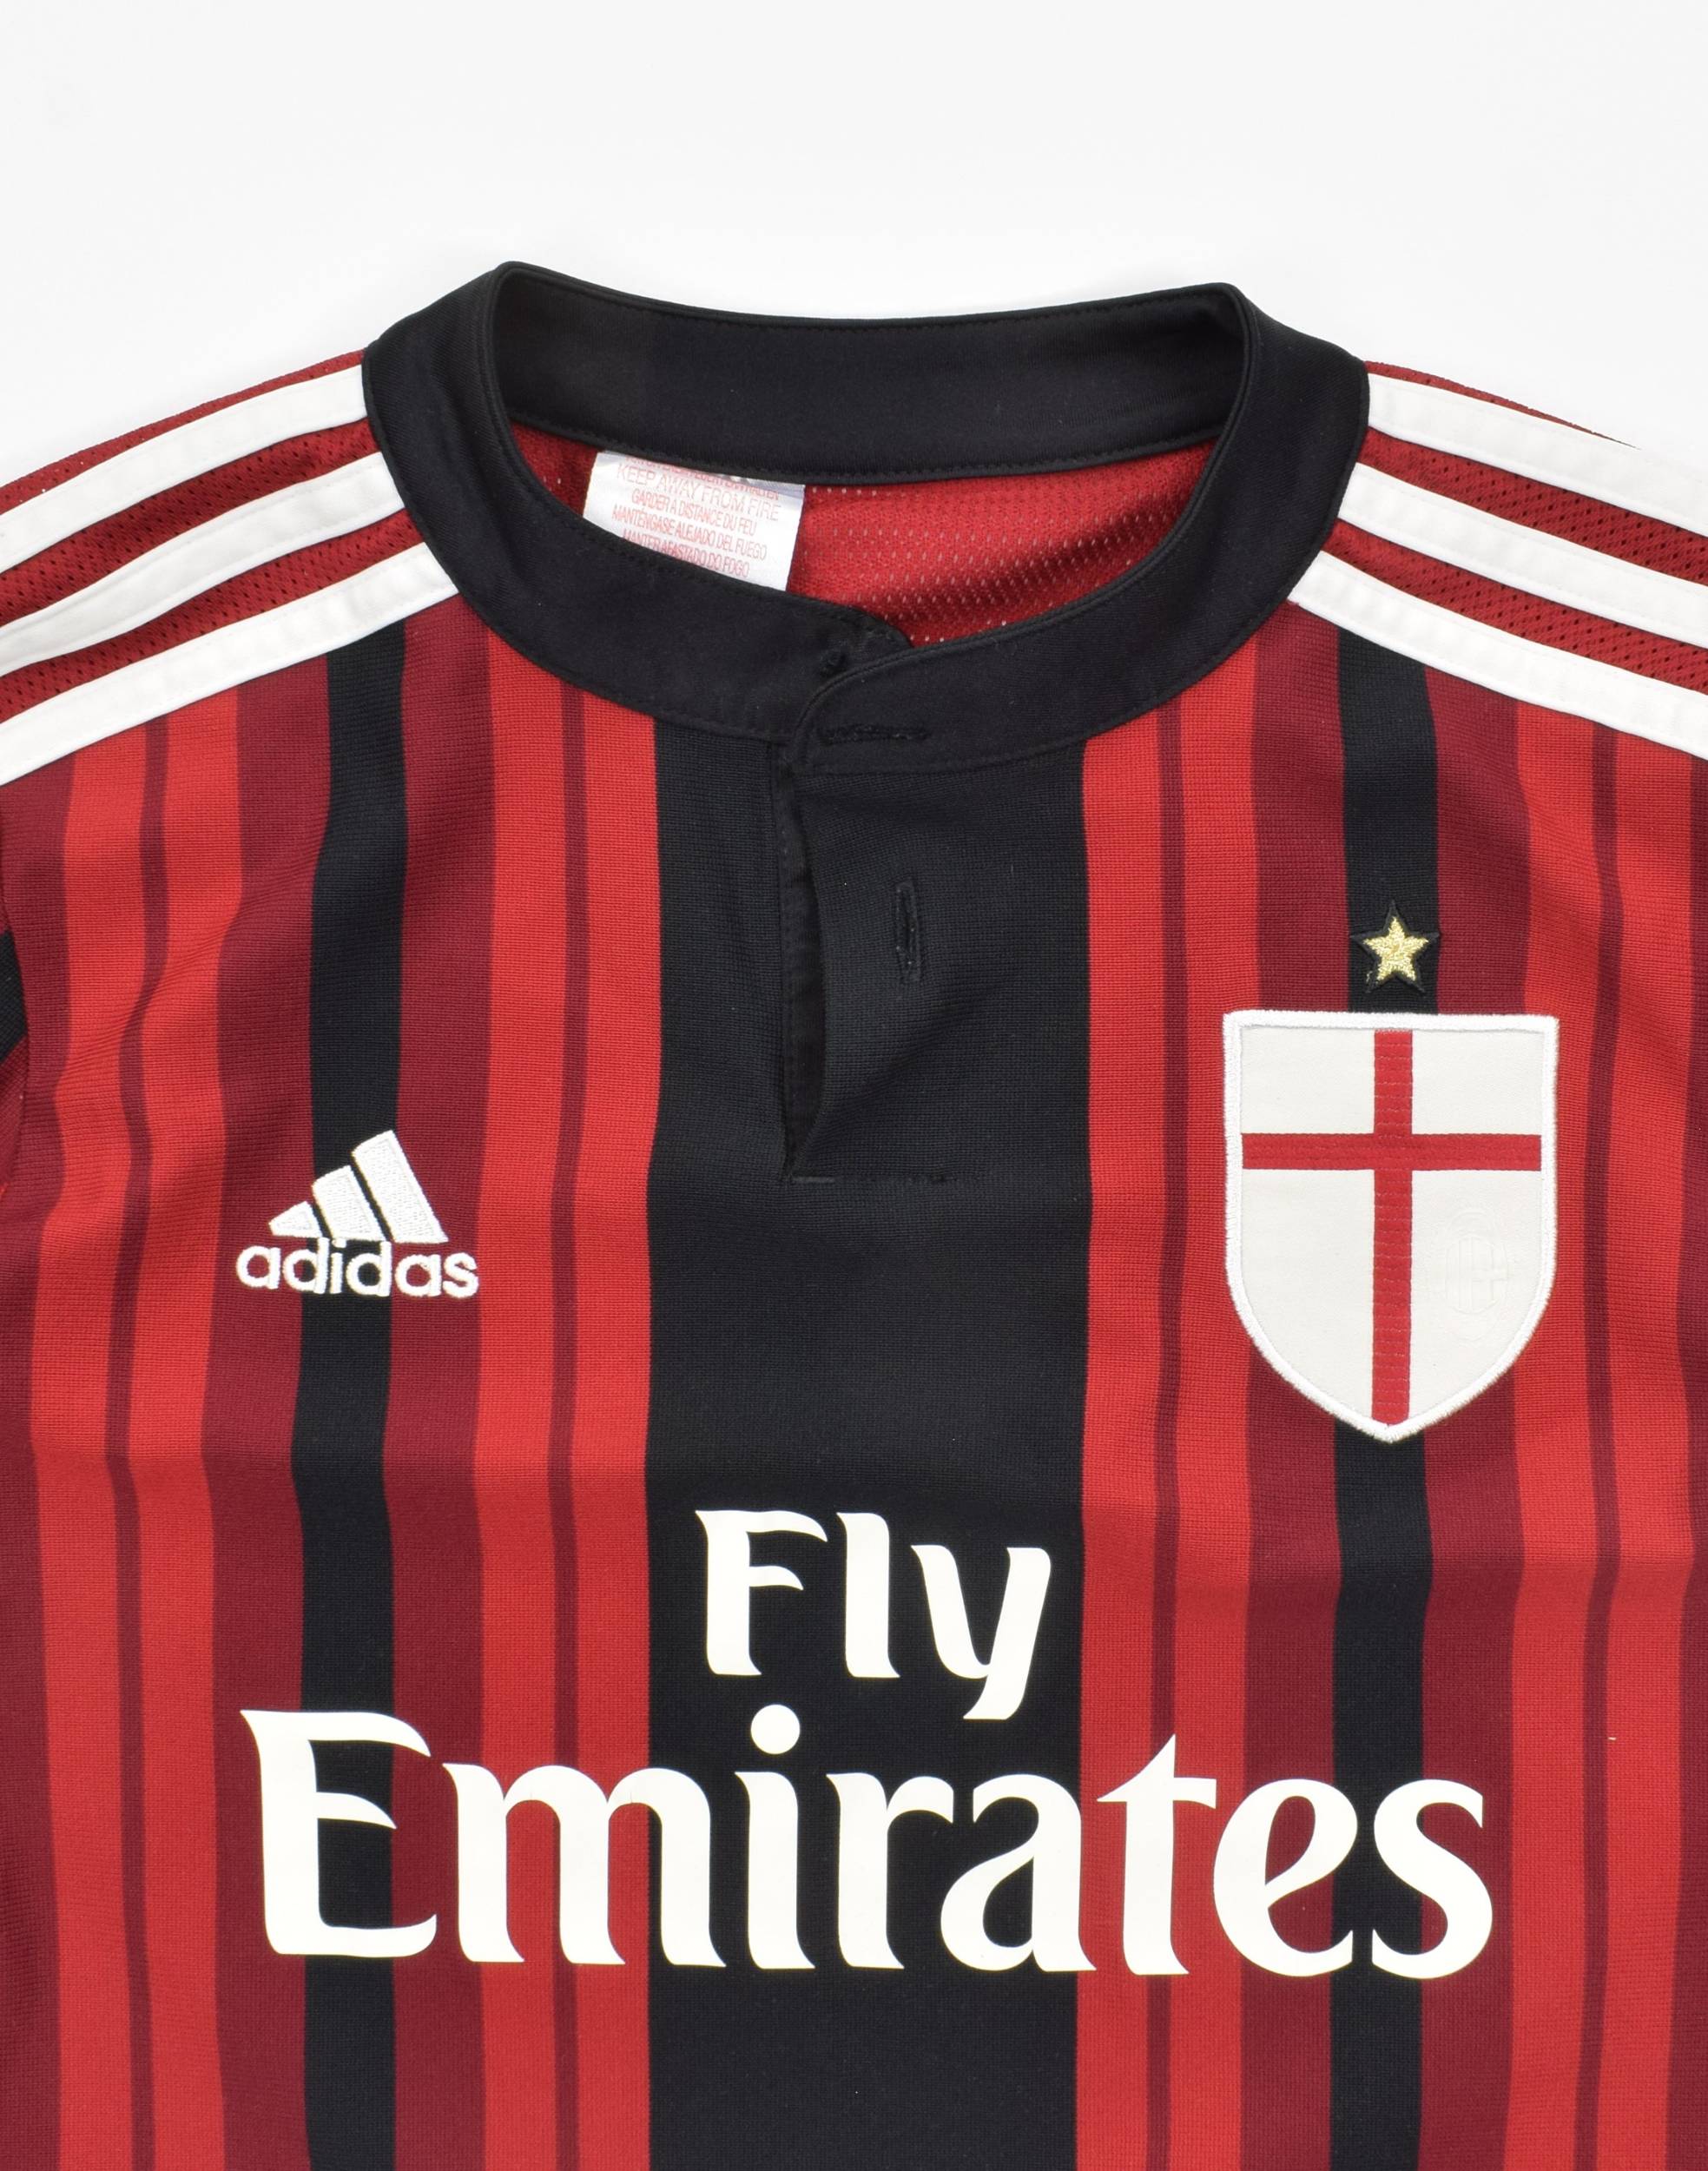 AC Milan 2015-16 Away Kit